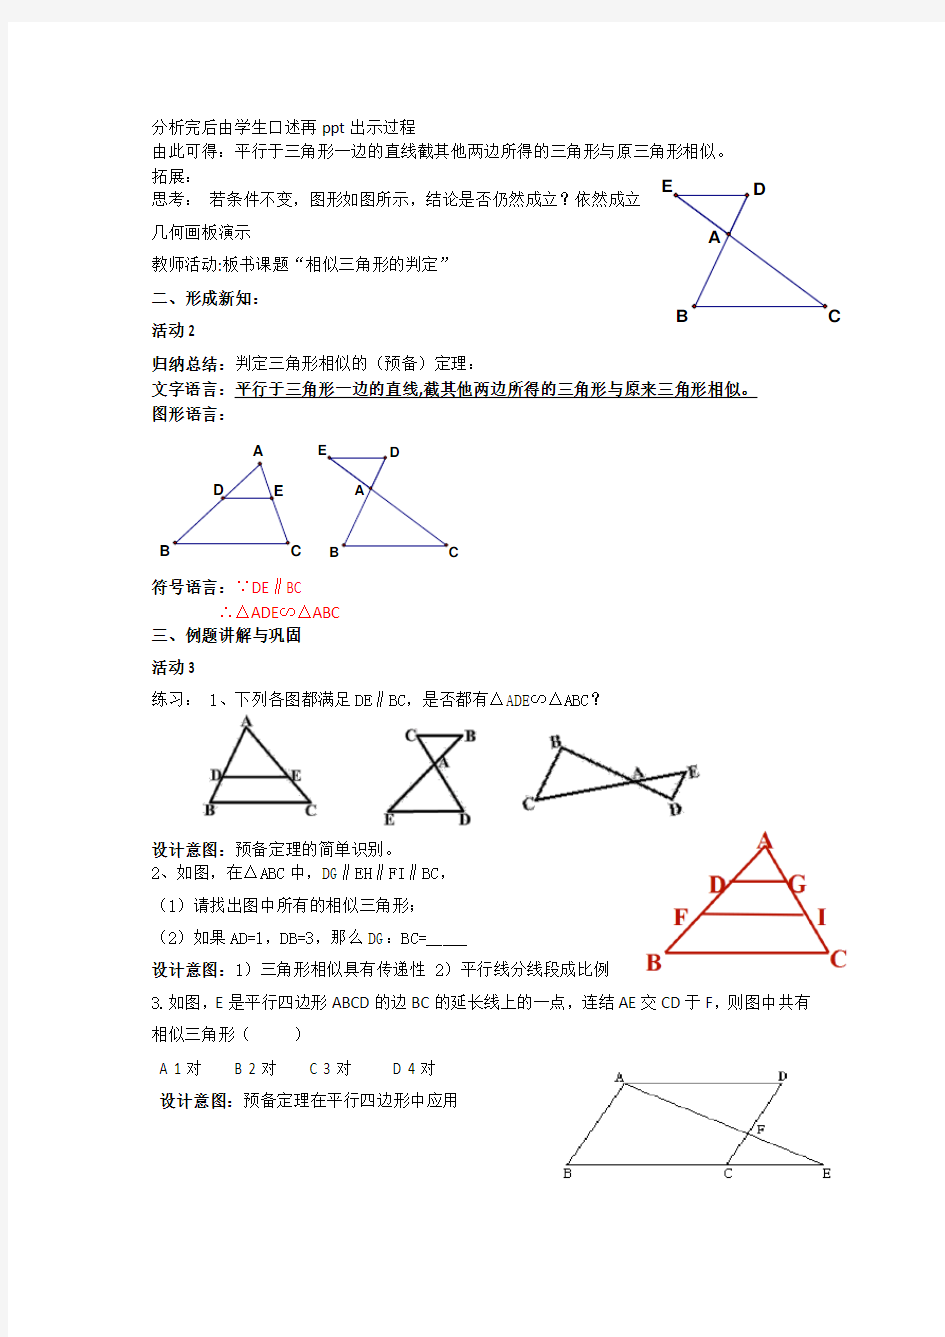 《相似三角形的判定预备定理 》